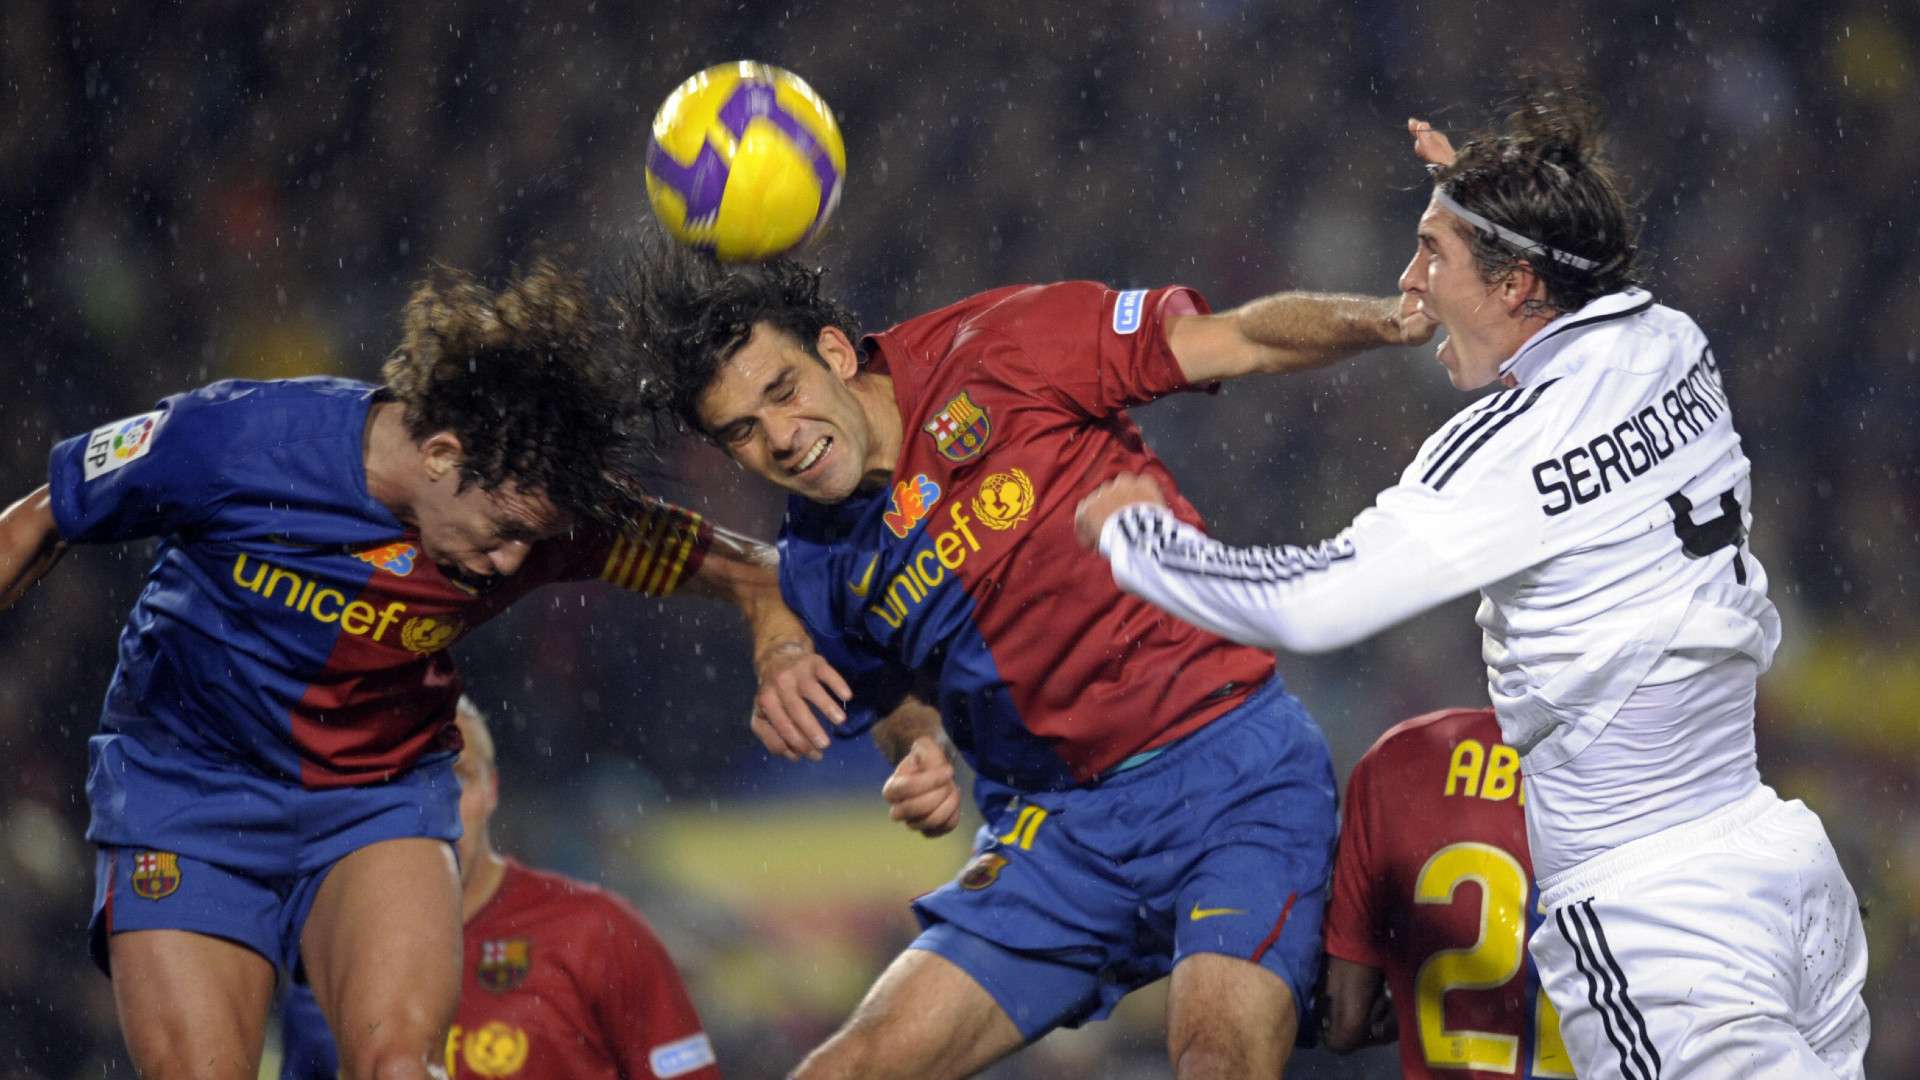 Carles Puyol, Rafael Marquez (FC Barcelona) und Sergio Ramos (Real Madrid) kämpfen in einem Clásico 2008 um den Ball.